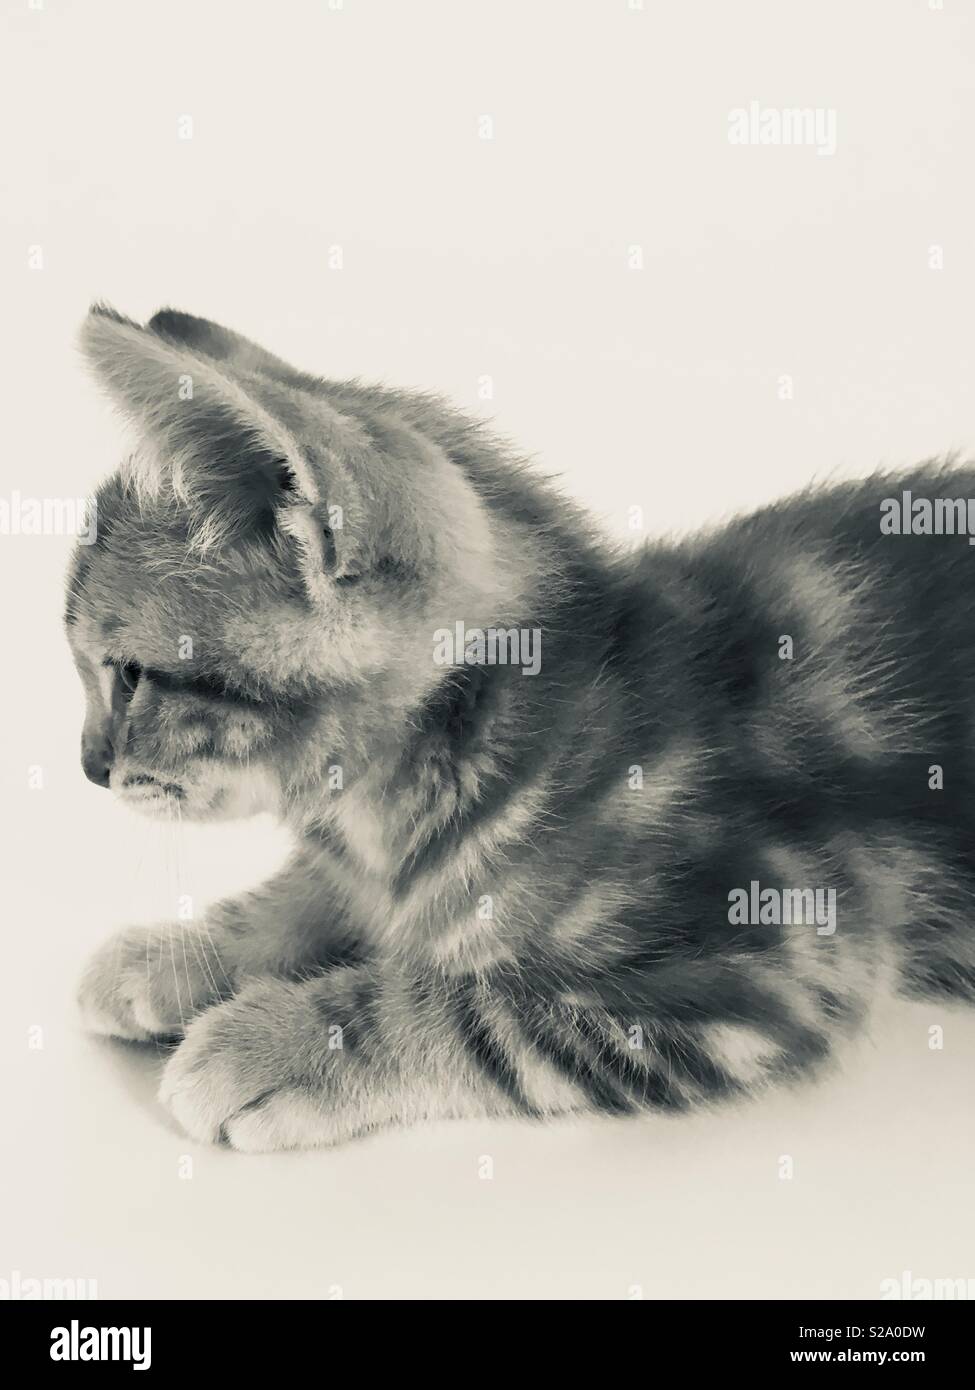 11 Woche alt Ginger tabby cat Kitten Stockfoto